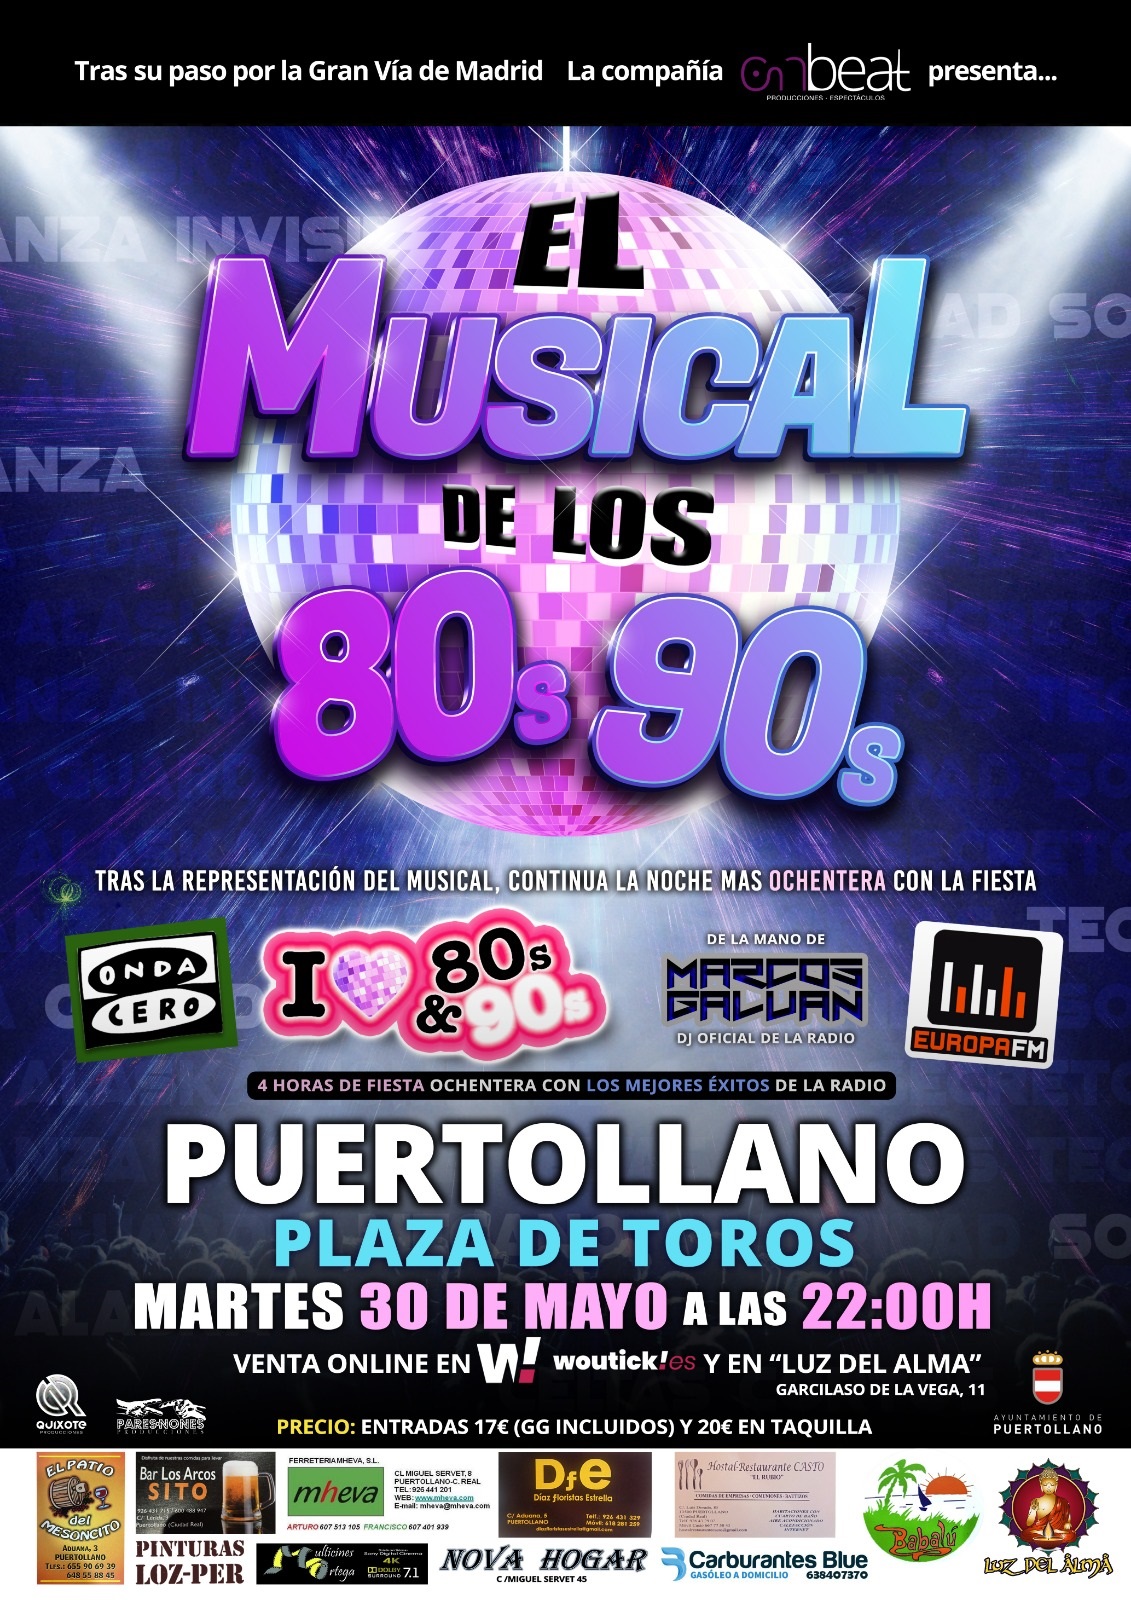 Compra tus entradas para EL MUSICAL DE LOS 80s 90s en El Batel